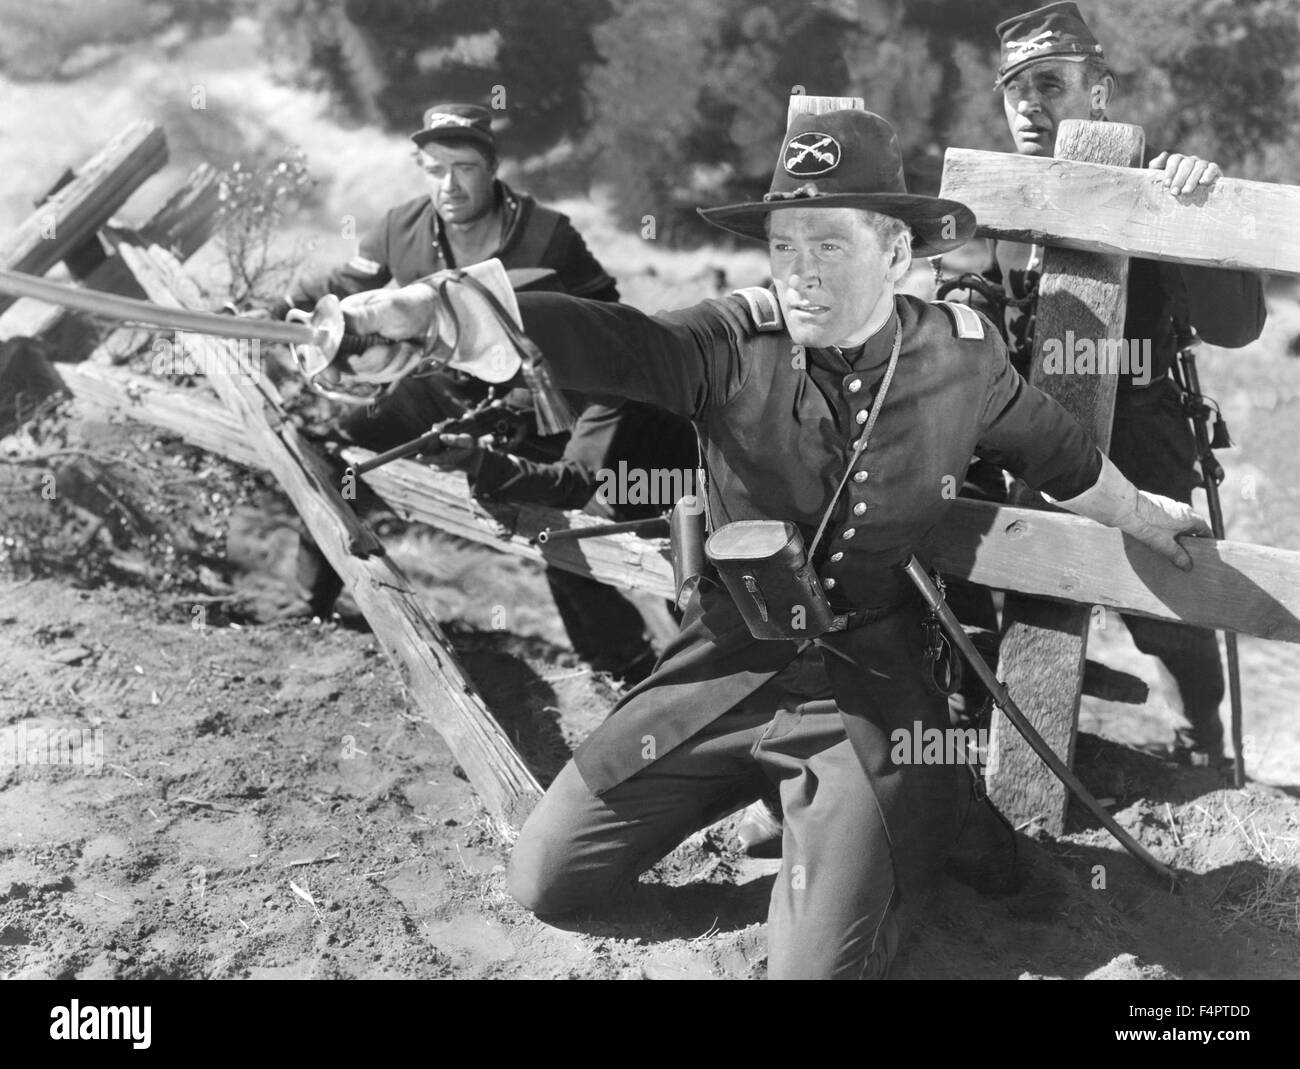 Errol Flynn / sie starben mit ihren Stiefeln auf / 1941 unter der Regie von Raoul Walsh [Warner Bros Pictures] Stockfoto